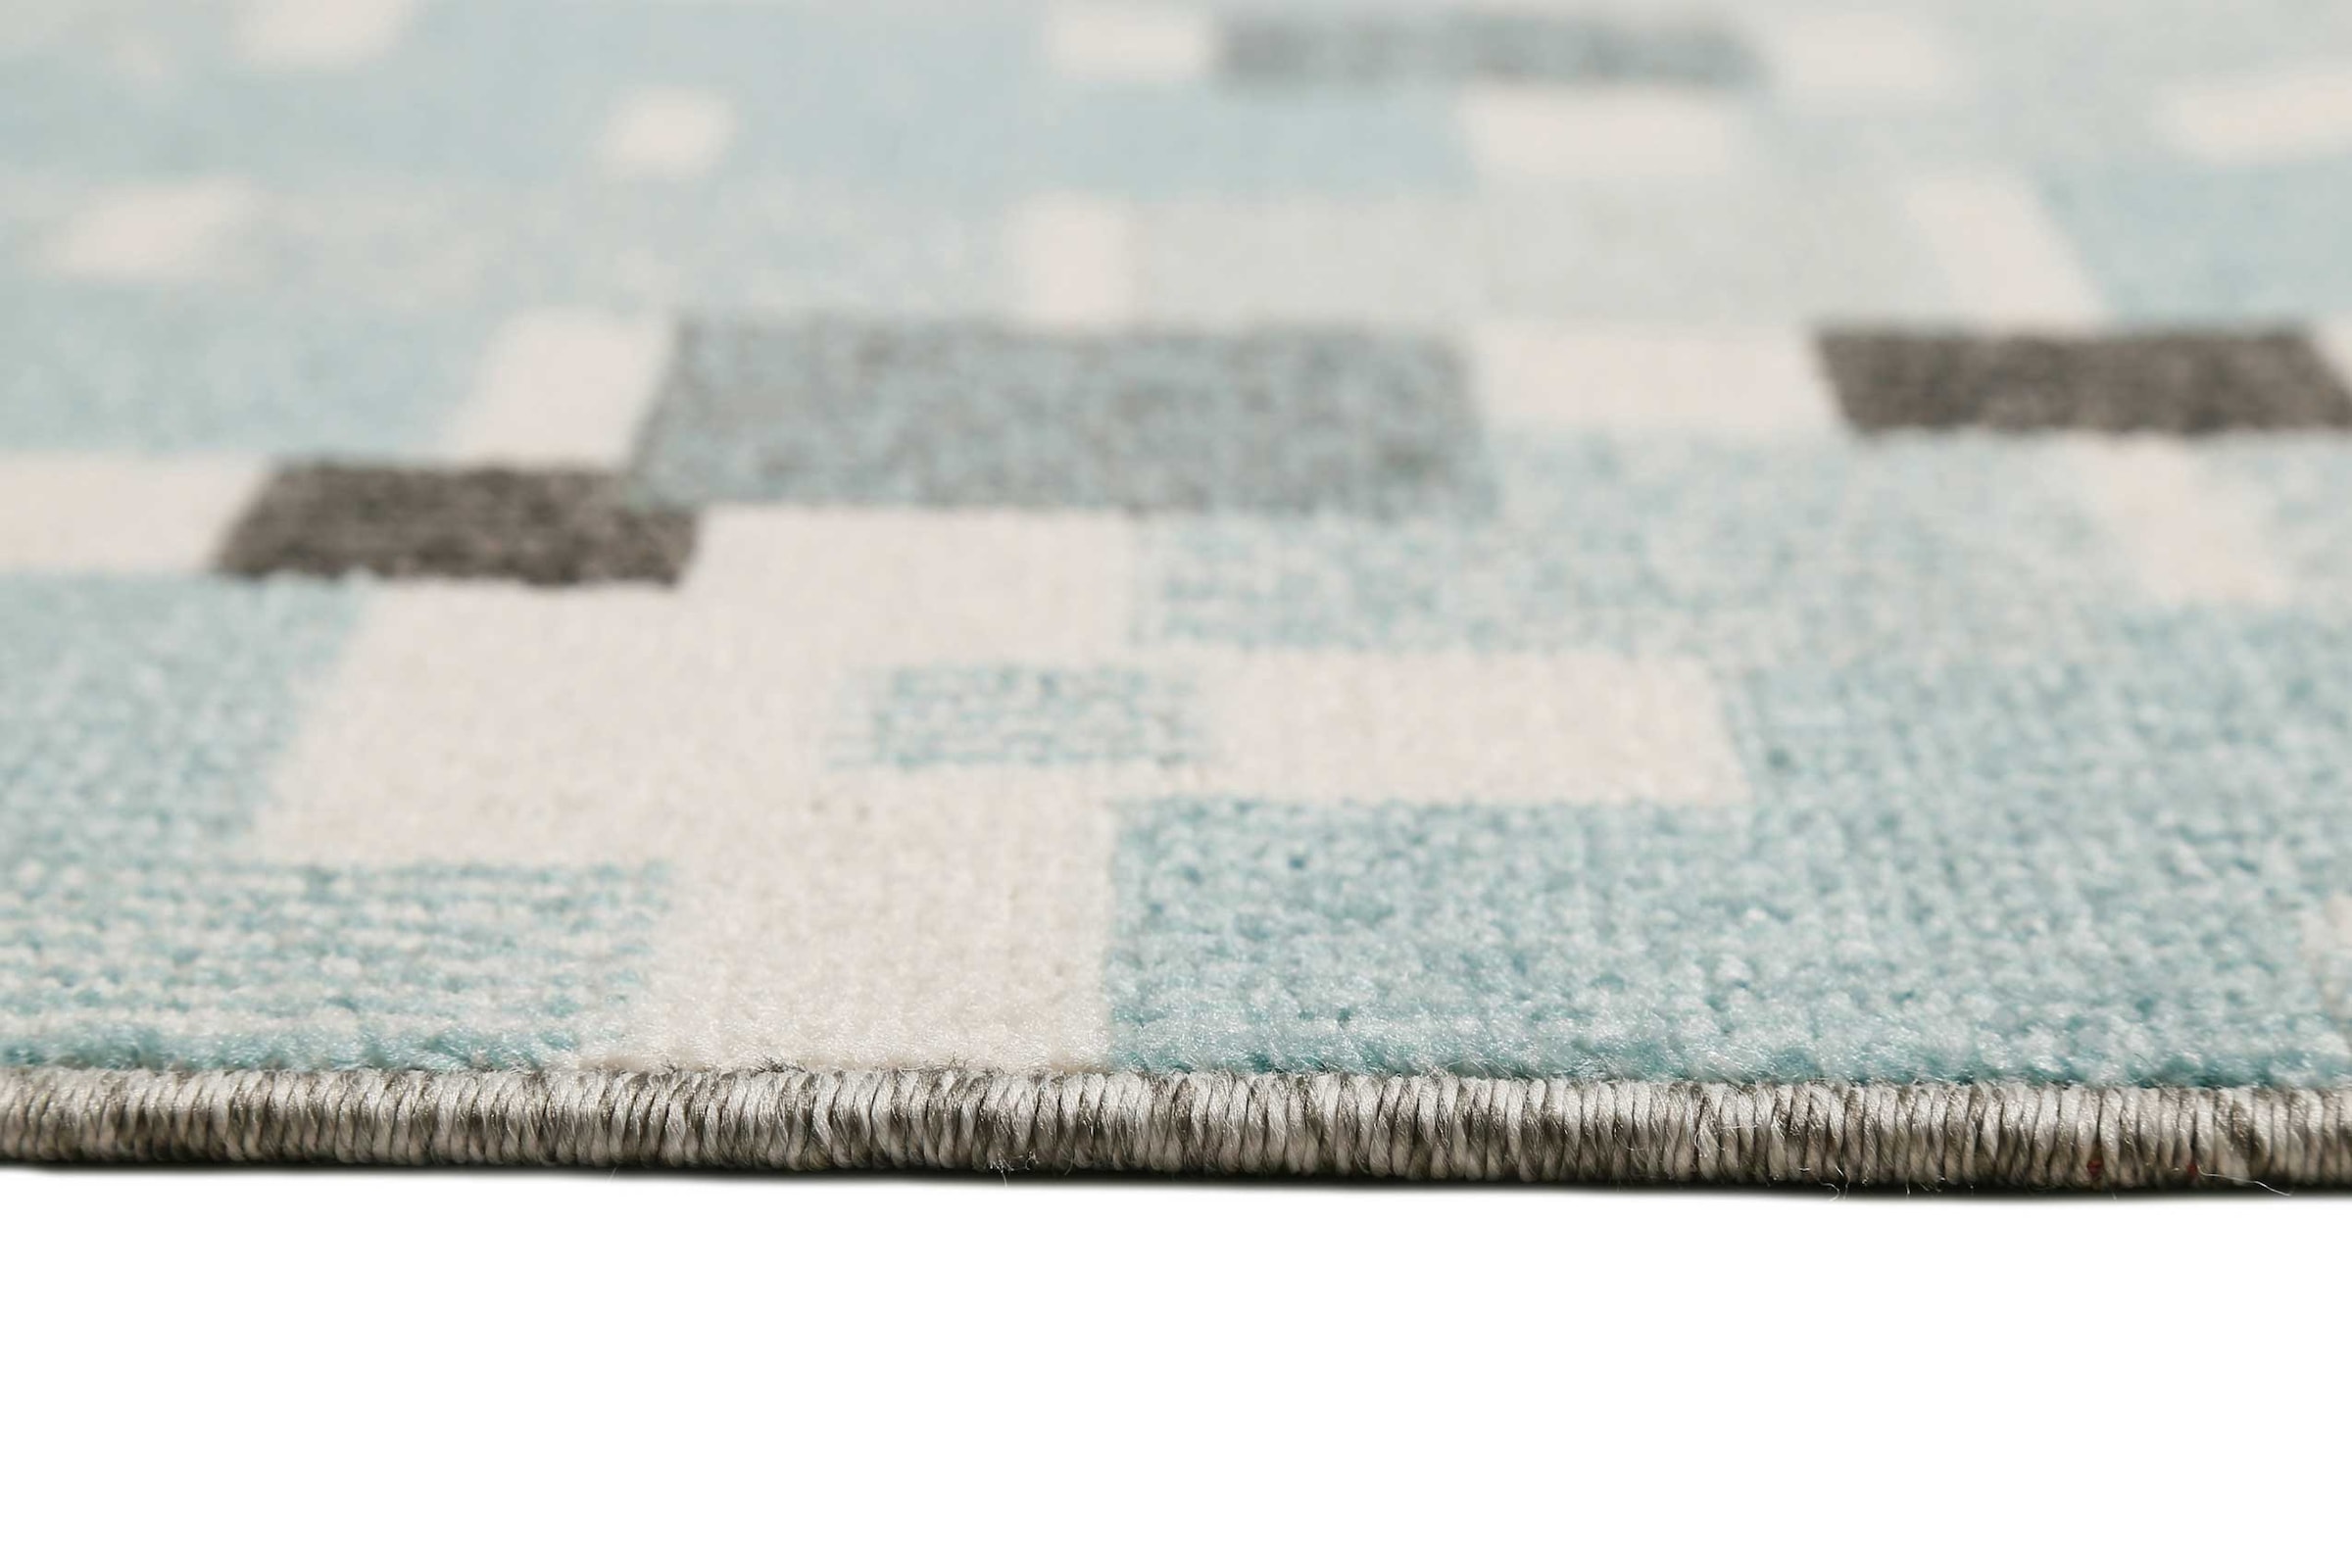 Esprit Outdoorteppich »Pacific«, rechteckig, pflegeleicht, im Mosaik-Muster, ideal für Terrasse, Küche, Wohnzimmer